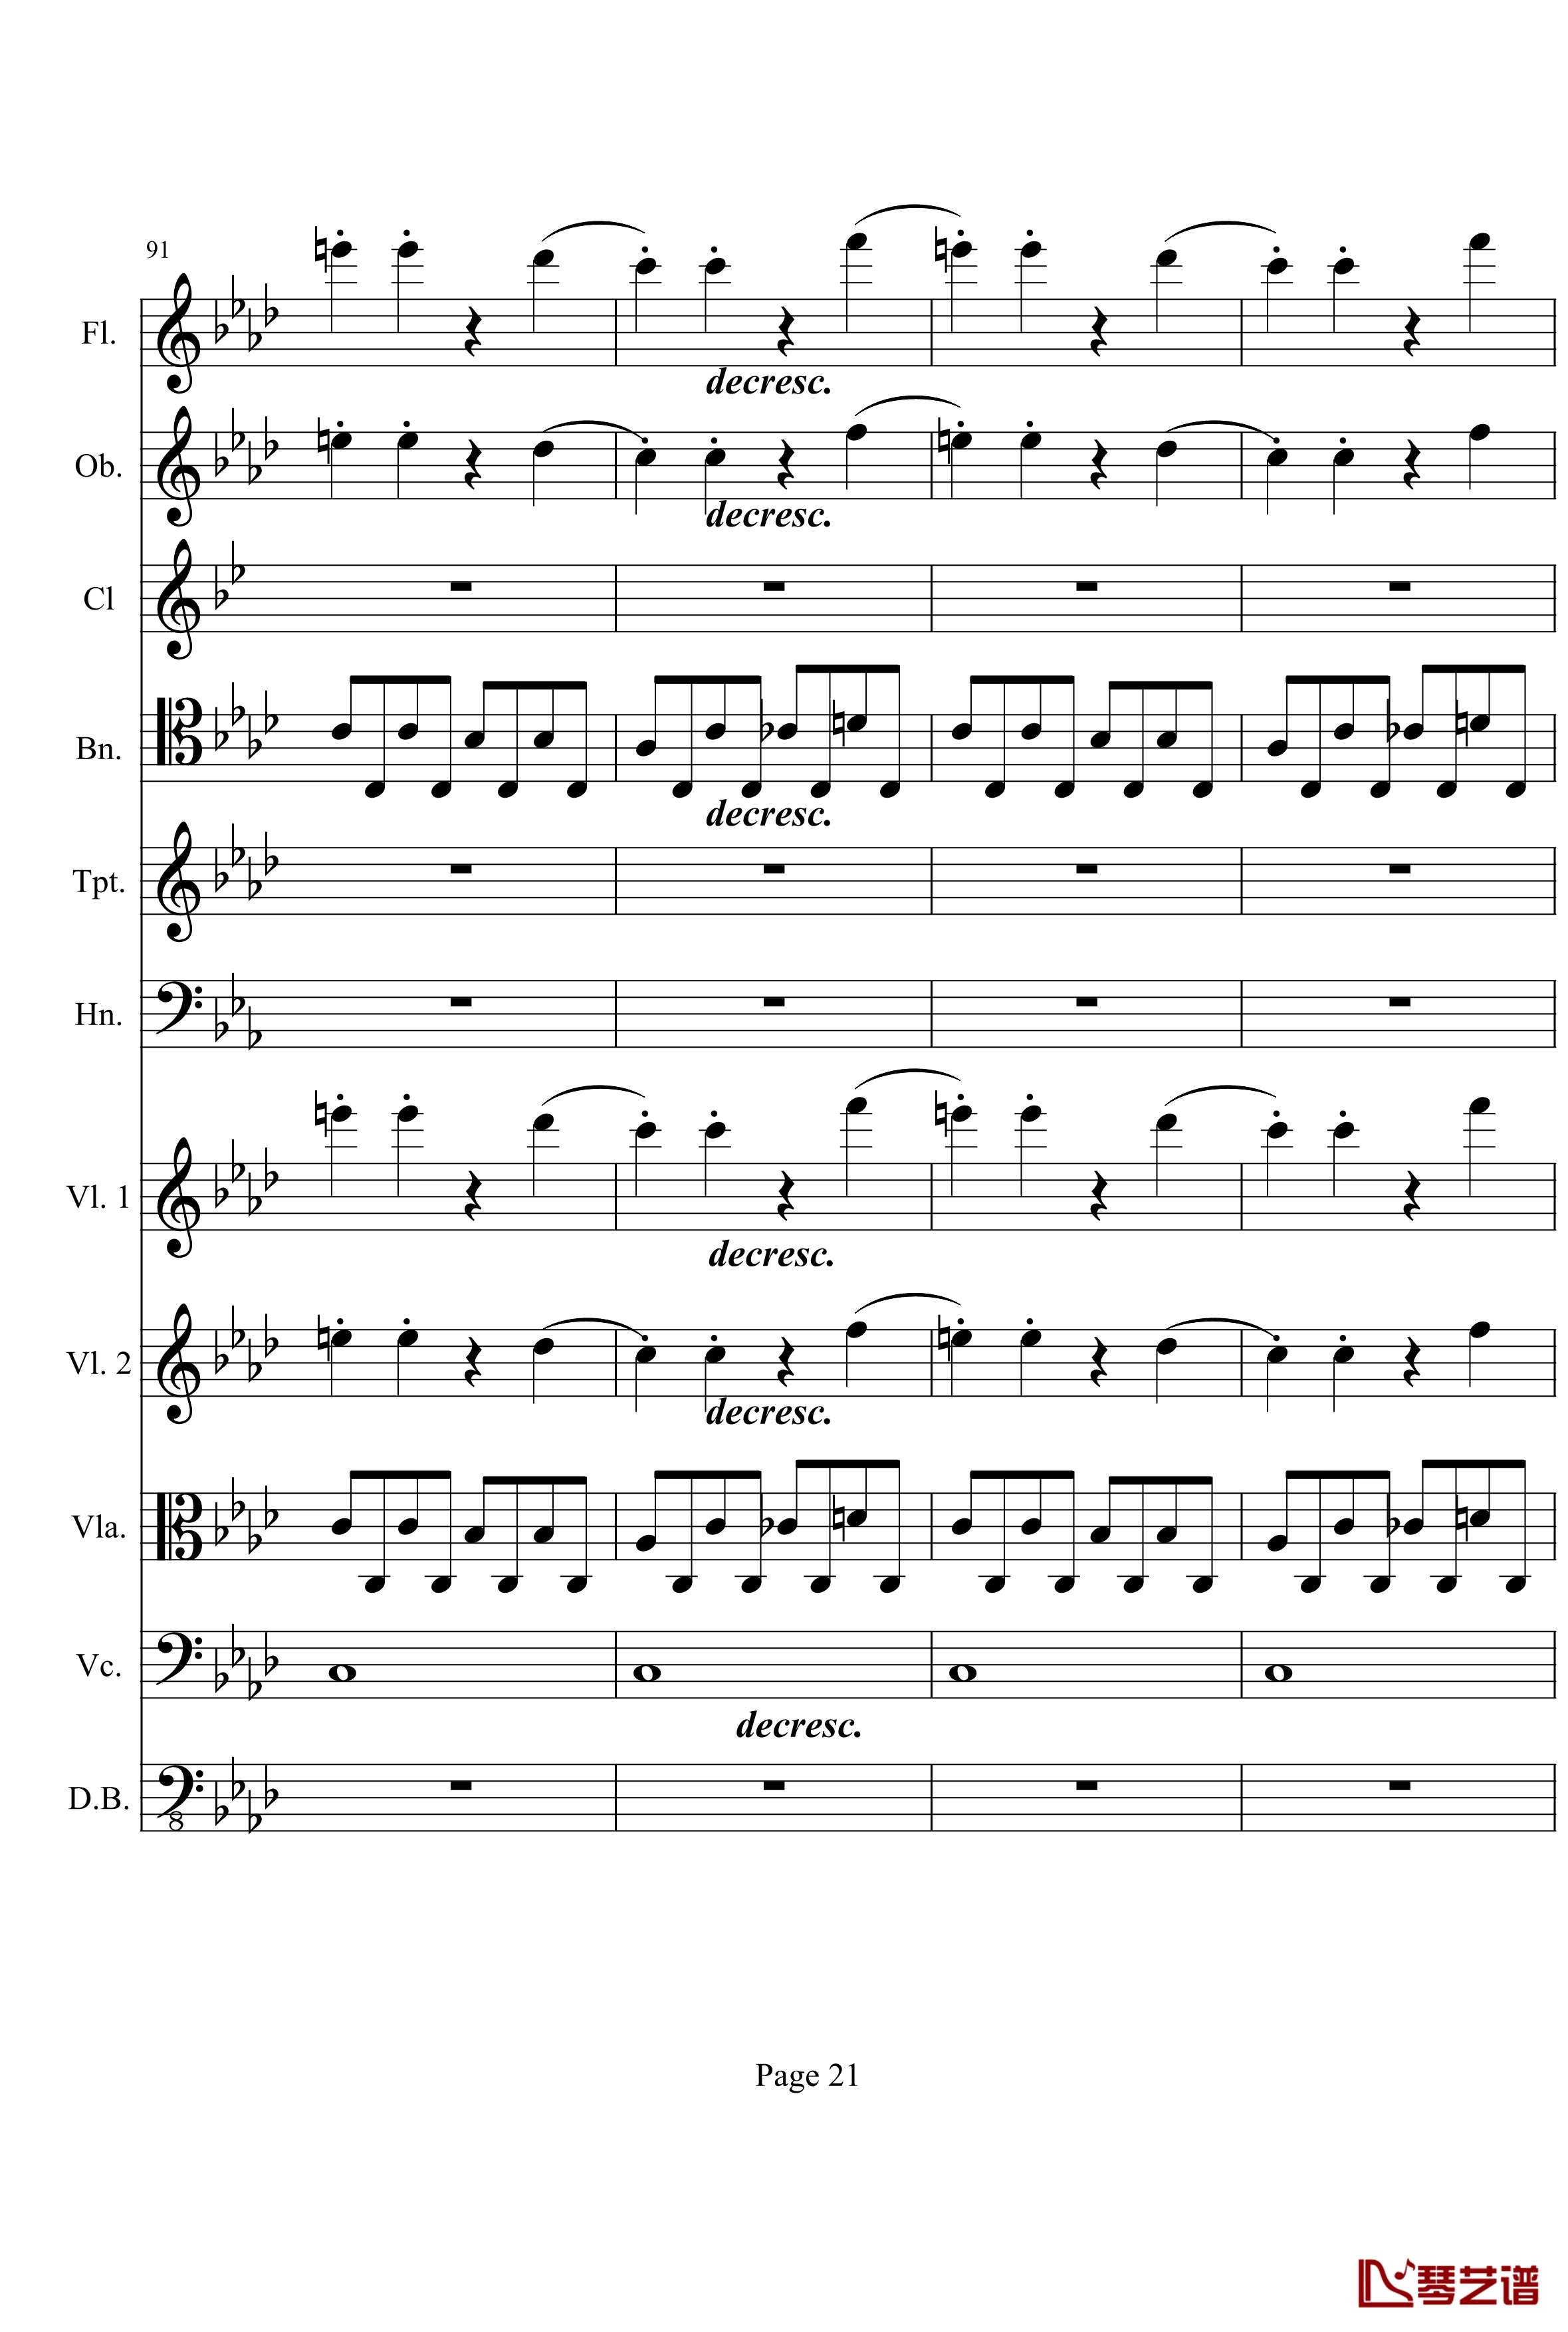 奏鸣曲之交响钢琴谱-第1首-Ⅰ-贝多芬-beethoven21